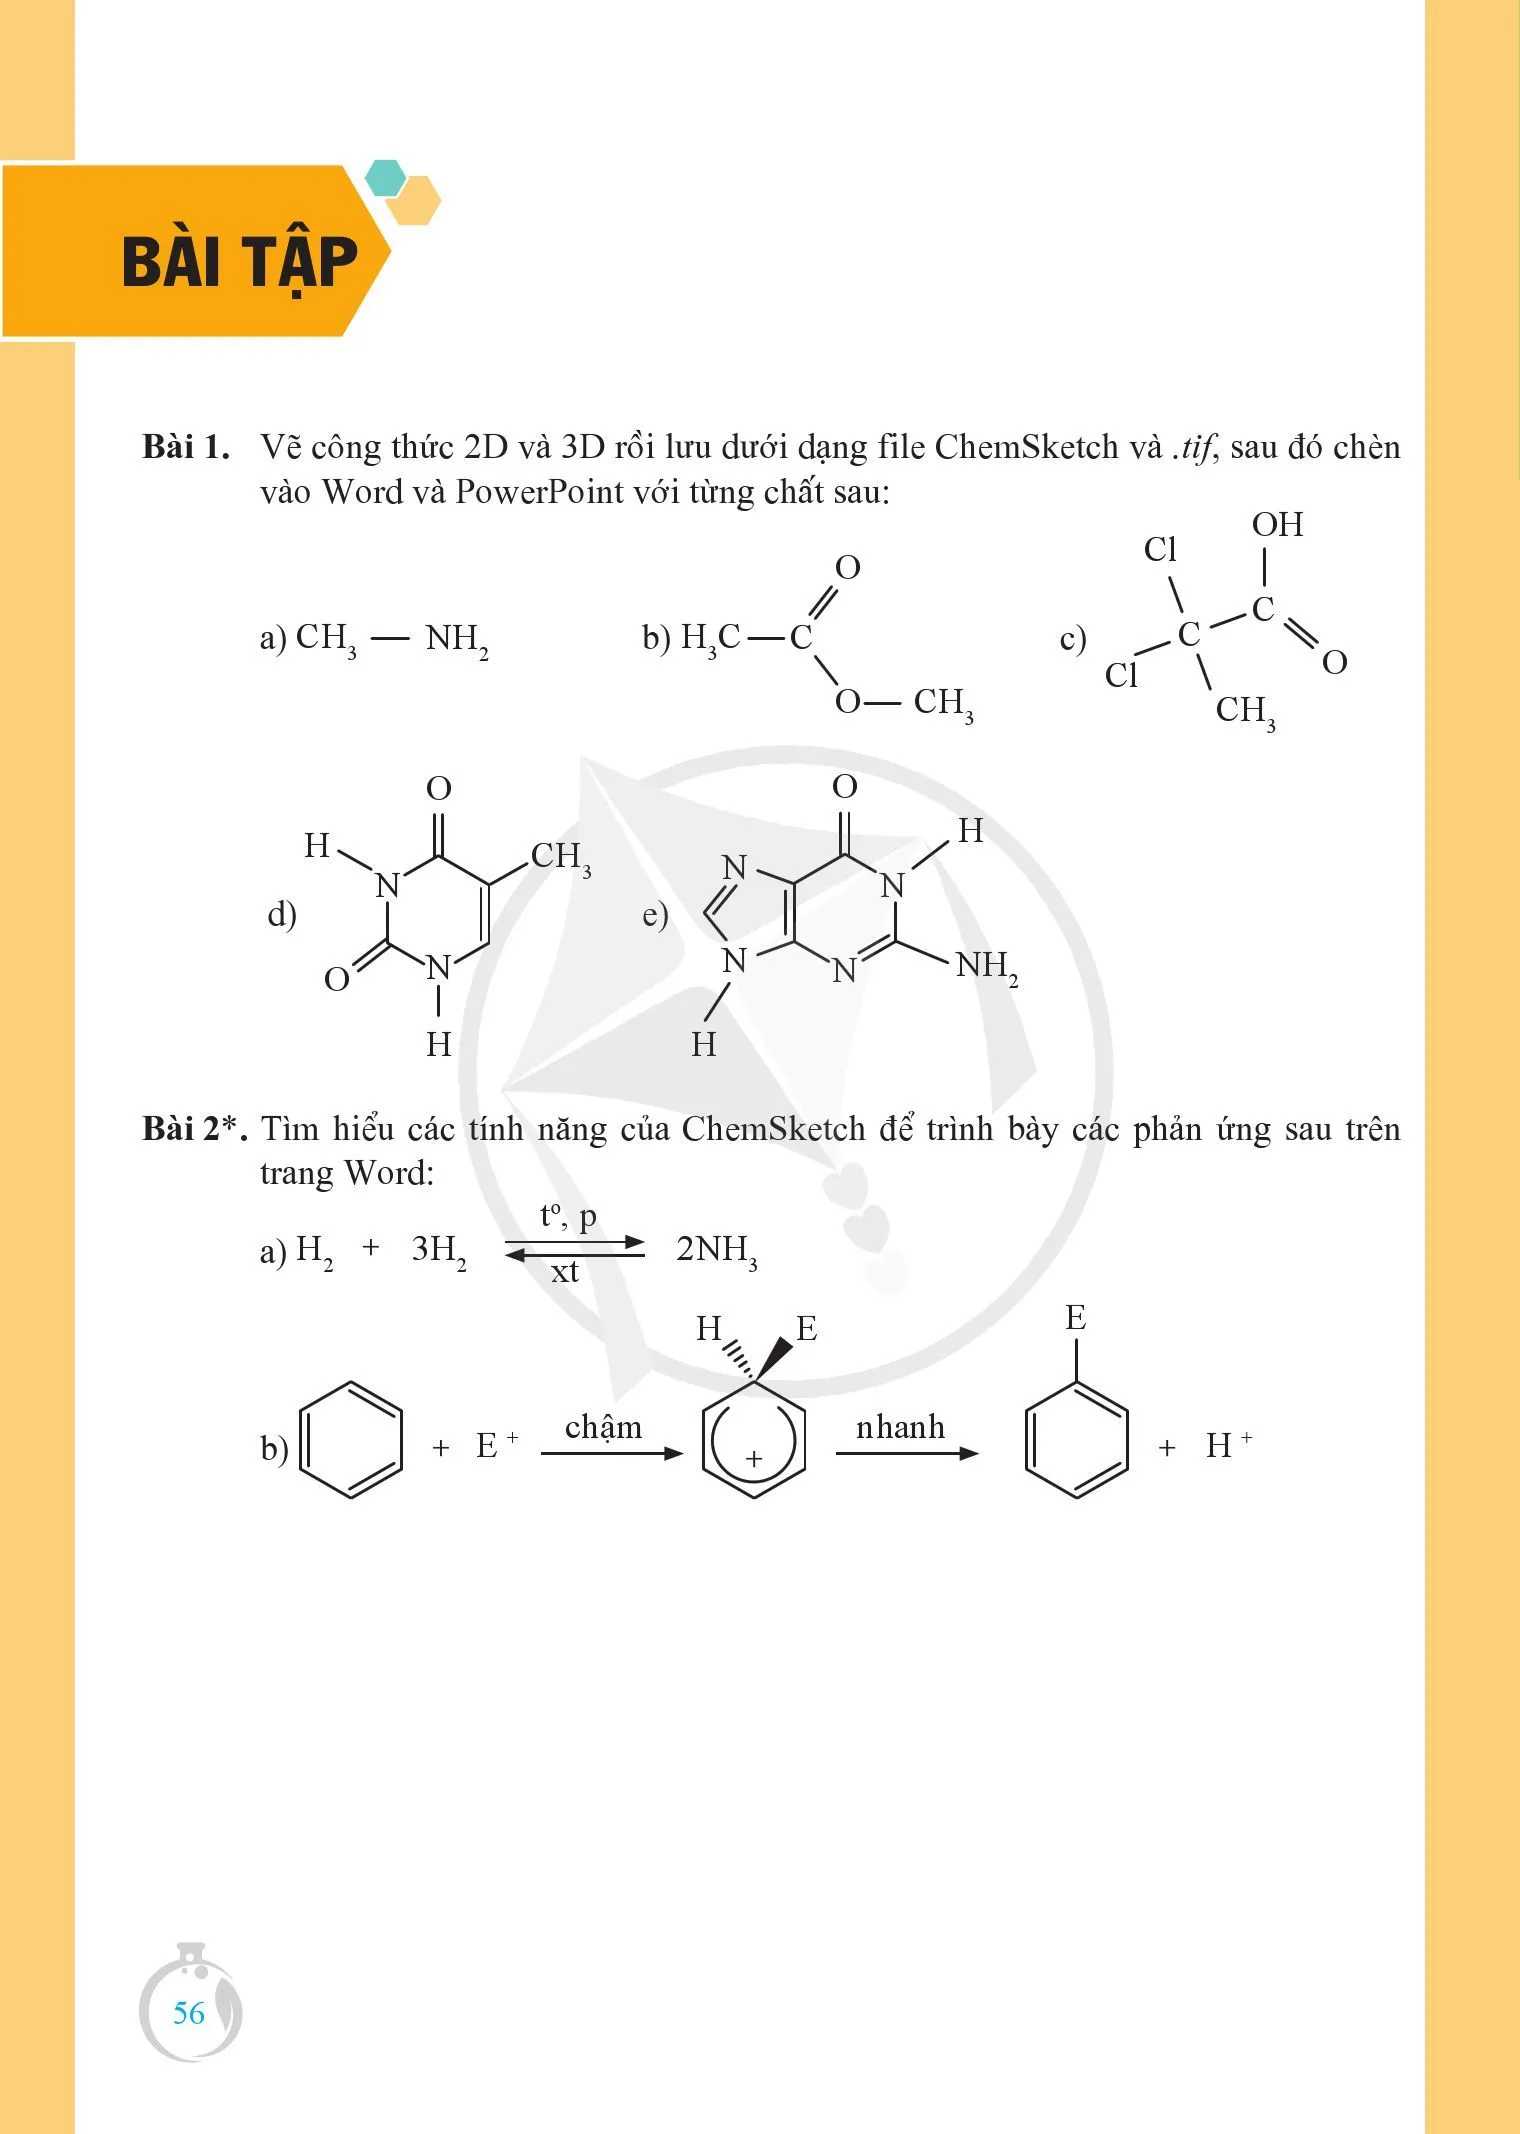 Bài 8. Vẽ cấu trúc phân tử .